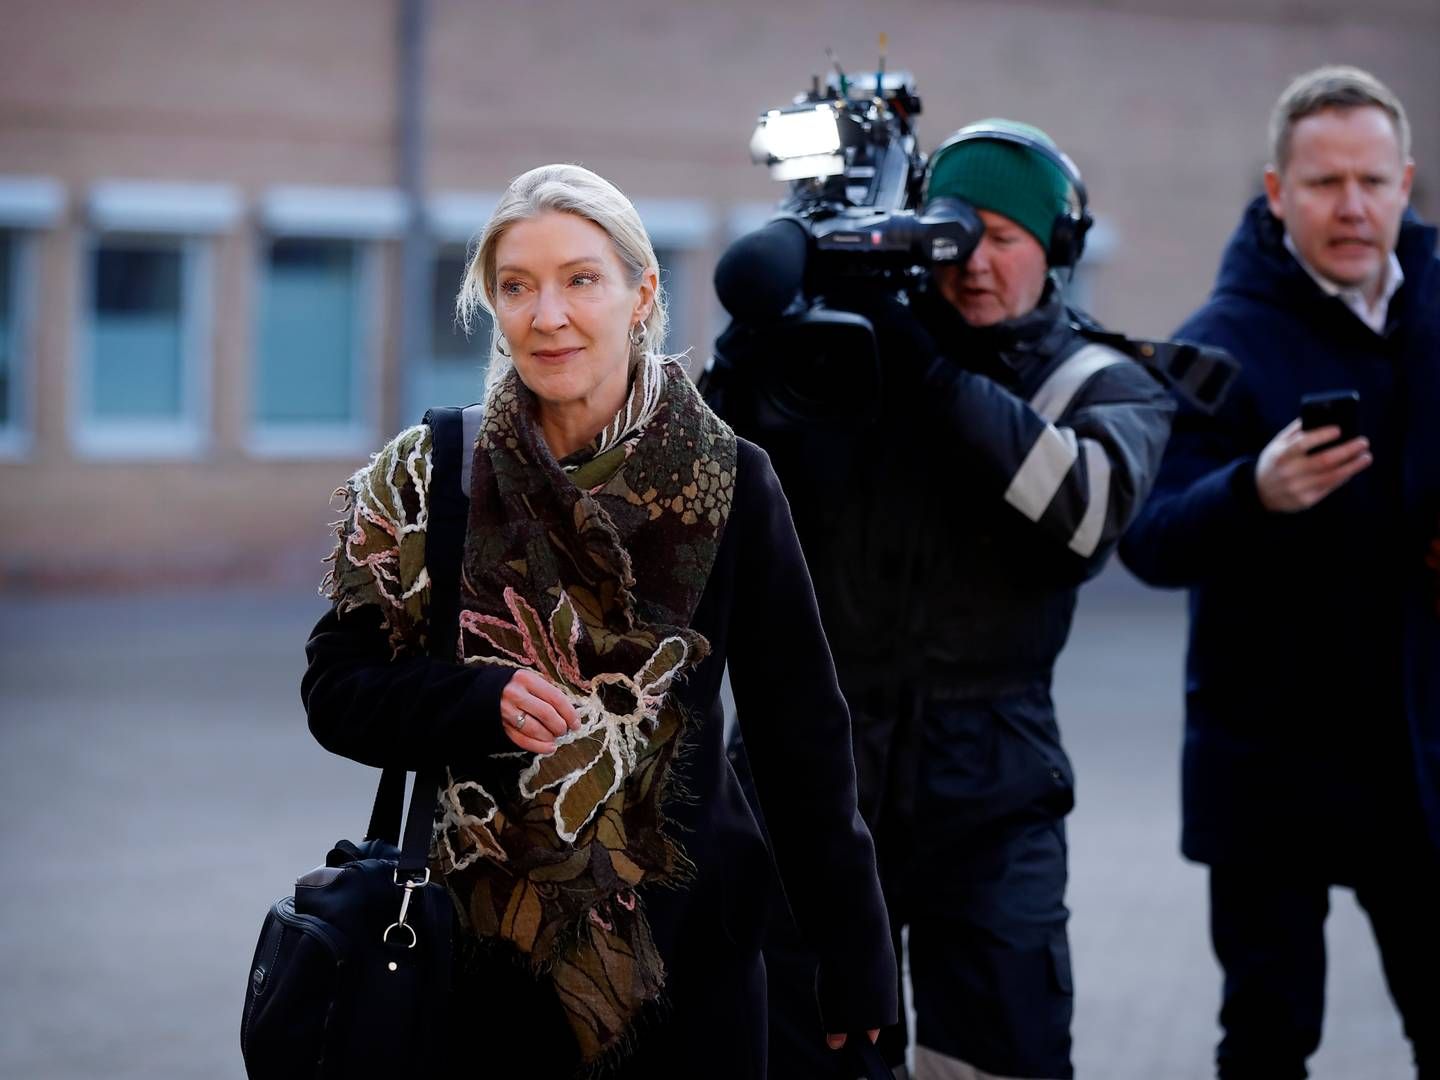 Specialanklager Marie Tullin fra Statsadvokaten for Særlig Kriminalitet (SSK) gik til stålet i Retten i Glostrup. | Foto: Jens Dresling